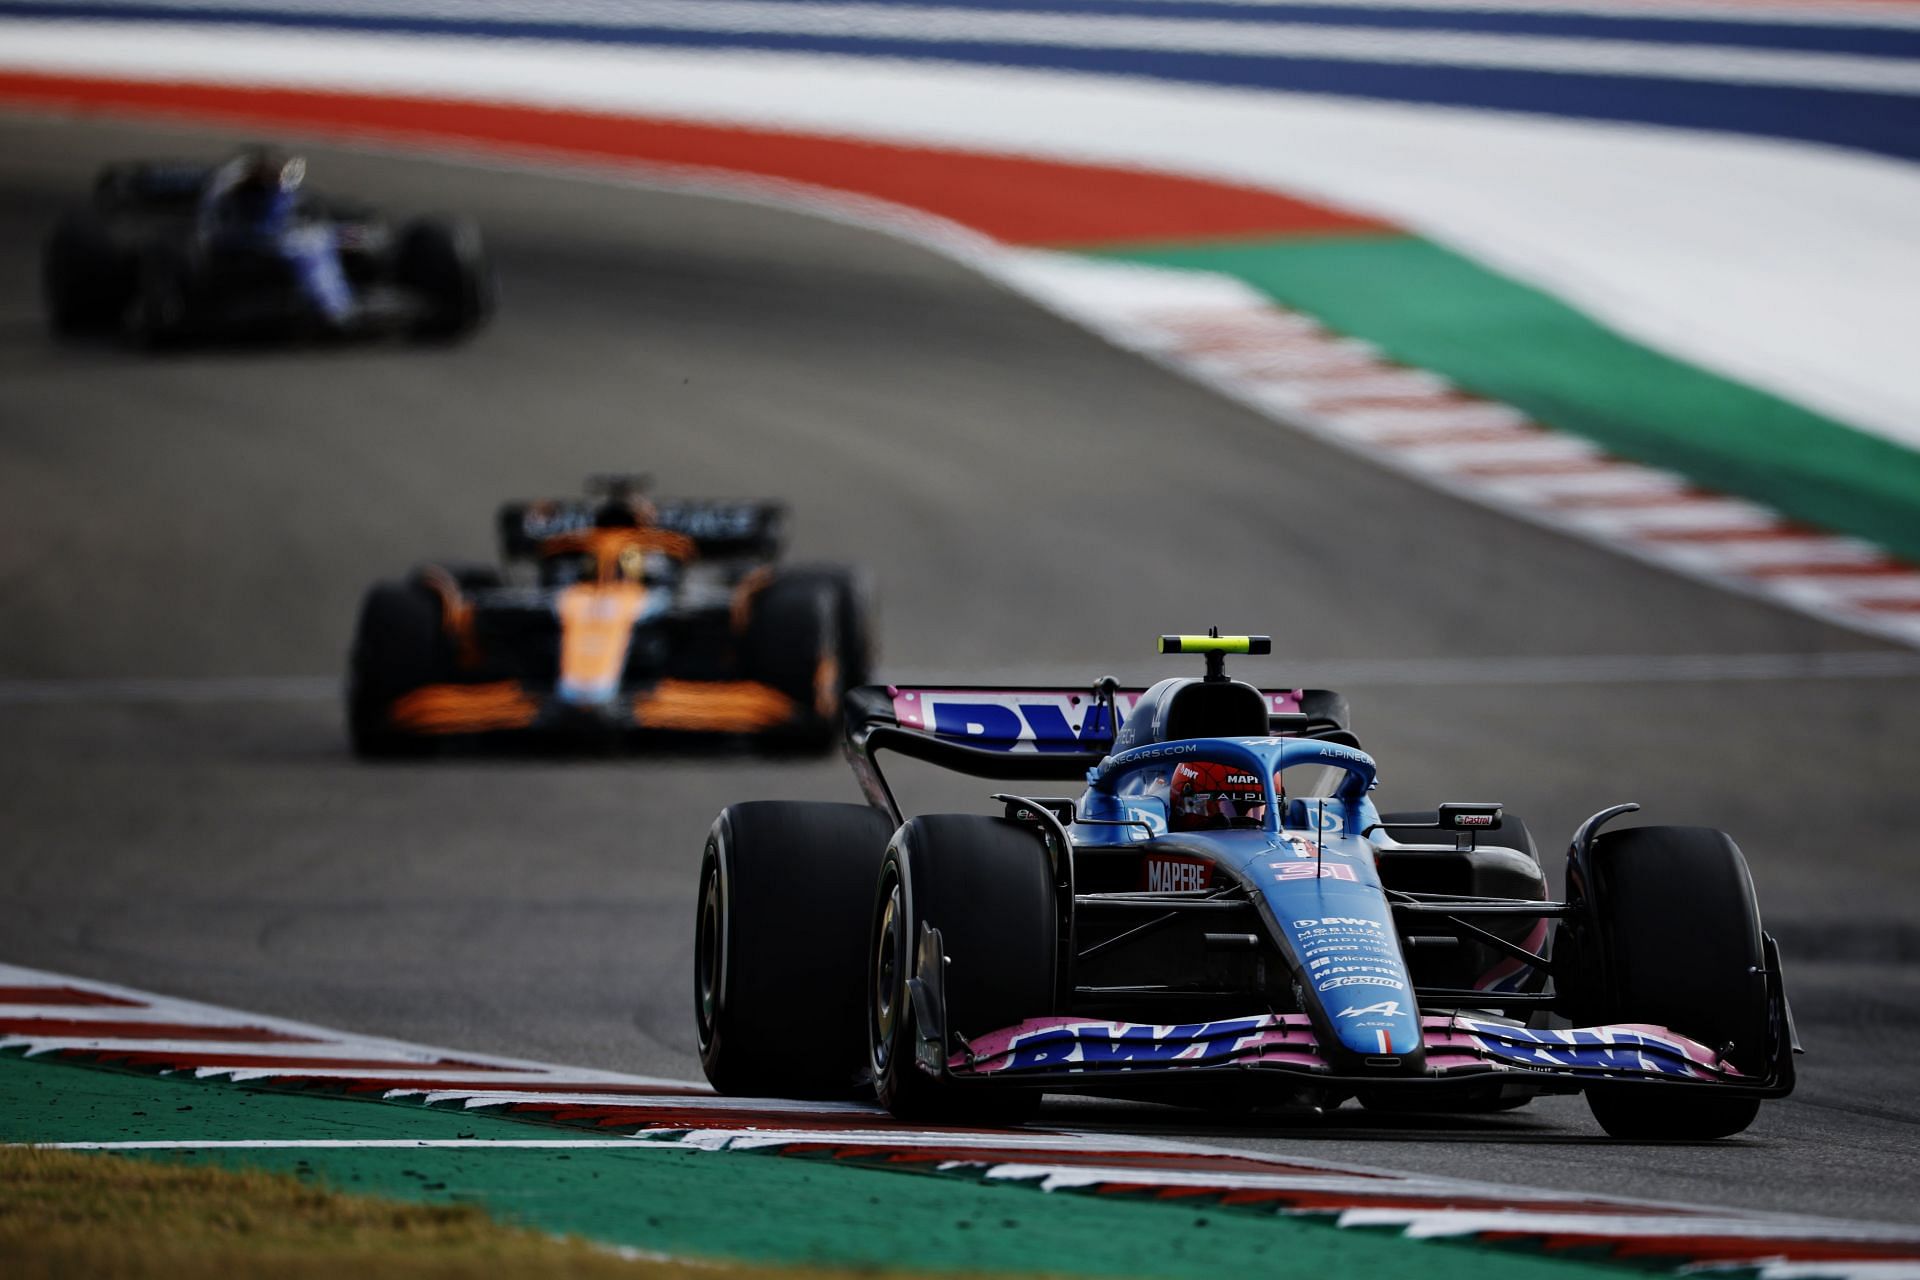 Alpine F1 battle shows what McLaren must fix in 2023 - Motor Sport Magazine